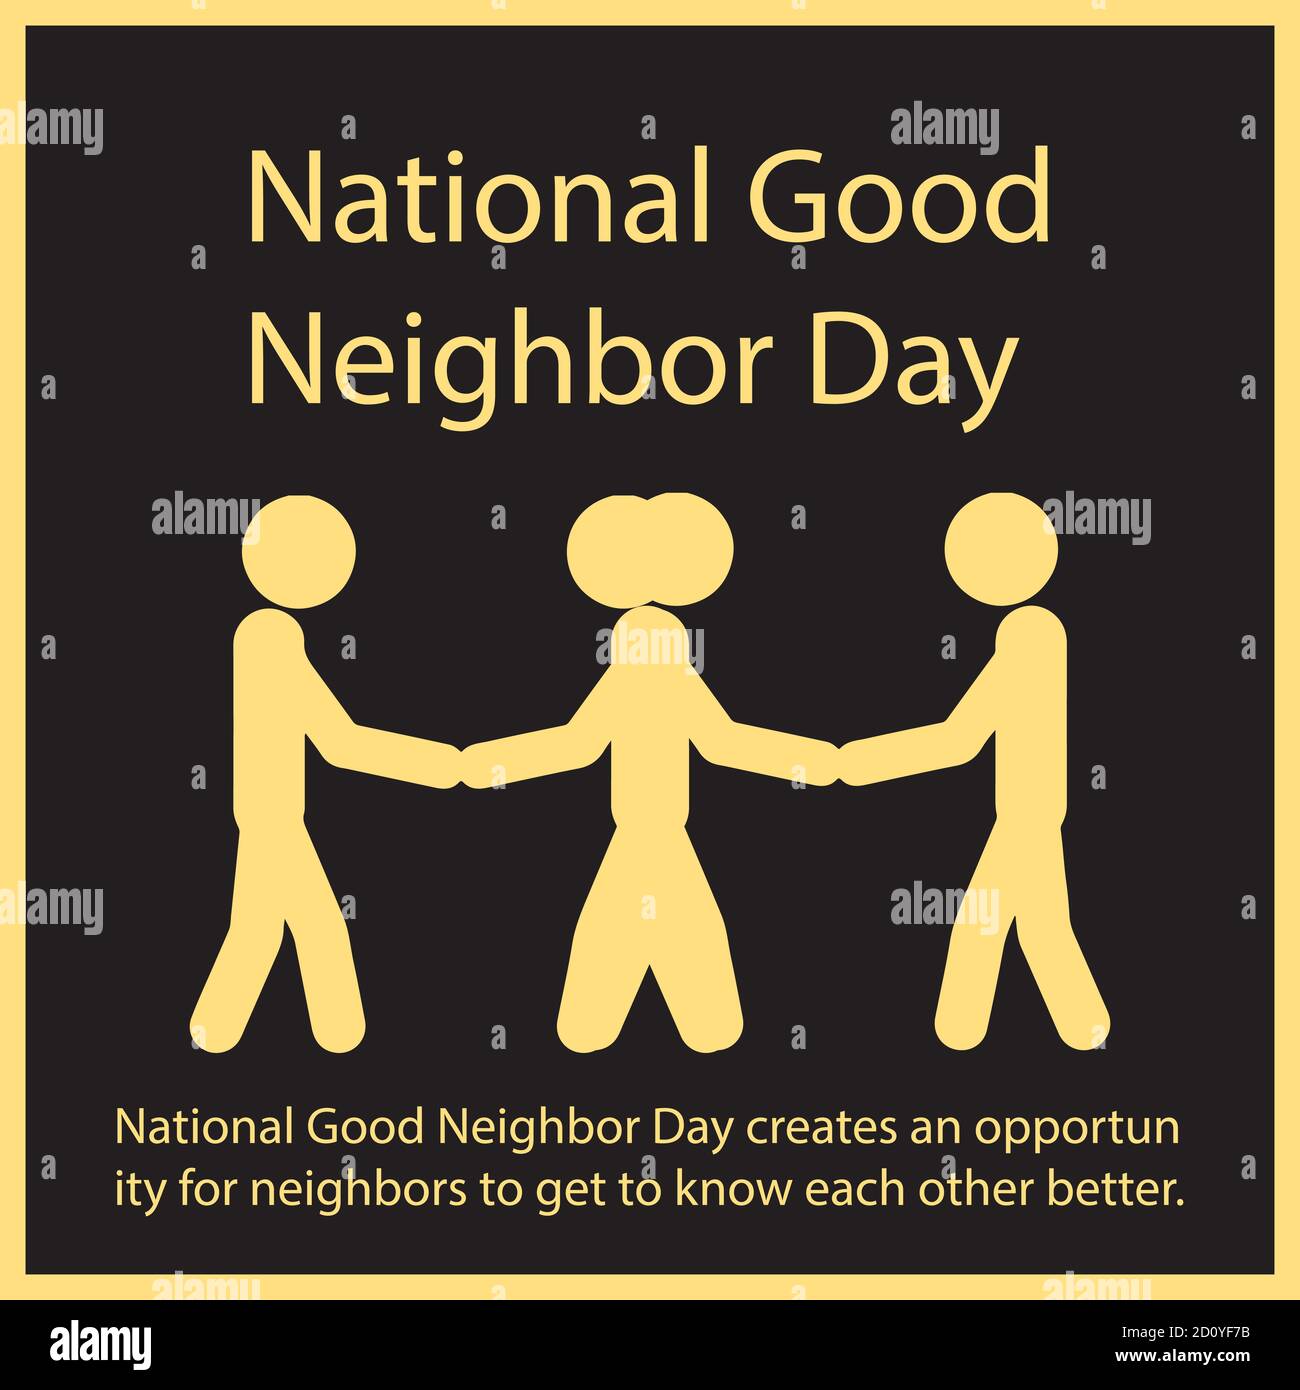 Der National Good Neighbor Day bietet Nachbarn die Möglichkeit, sich besser kennenzulernen. Stock Vektor